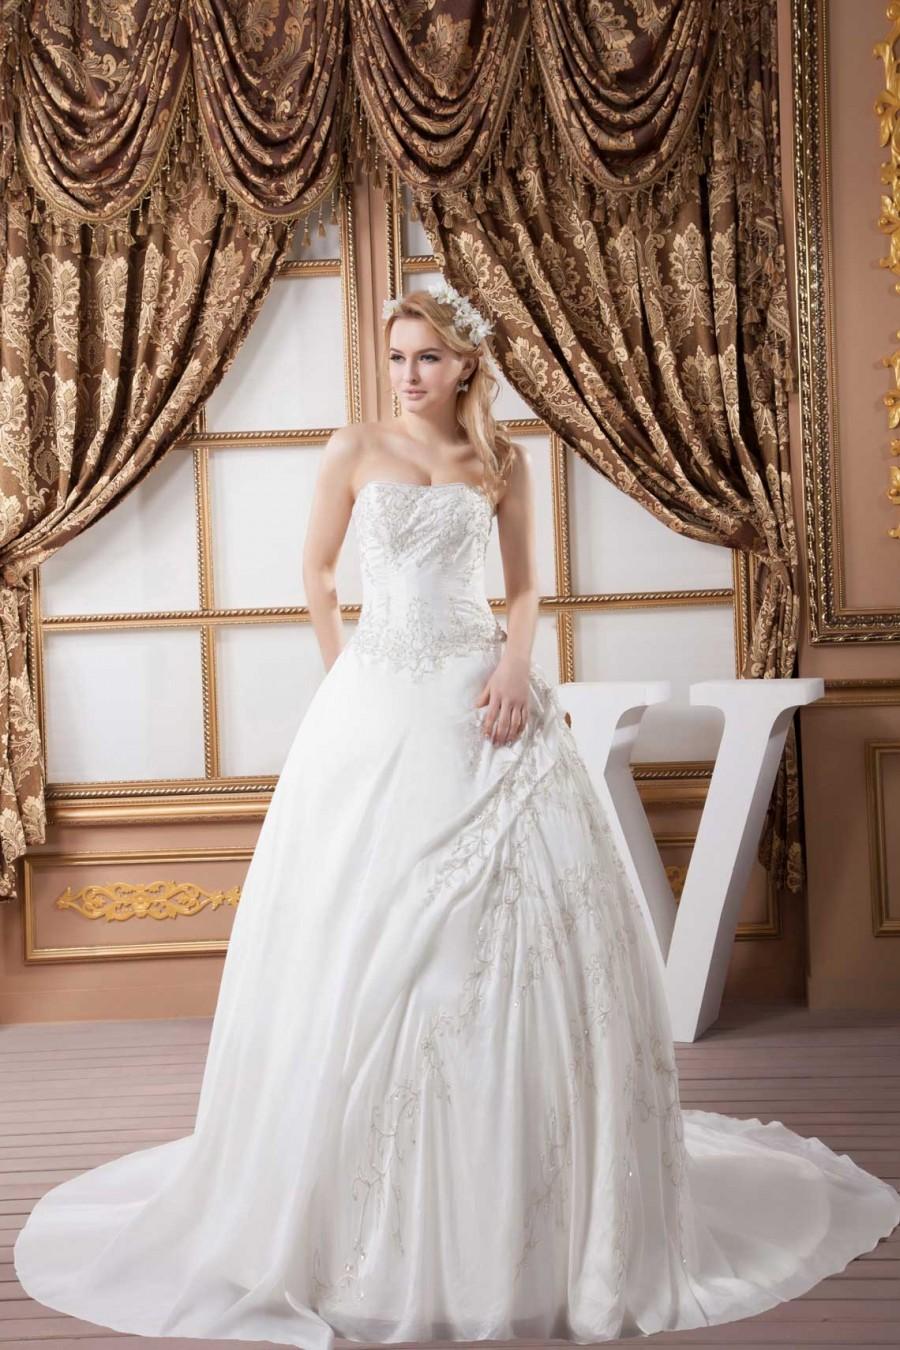 Mariage - wedding dress,ball gown wedding dress